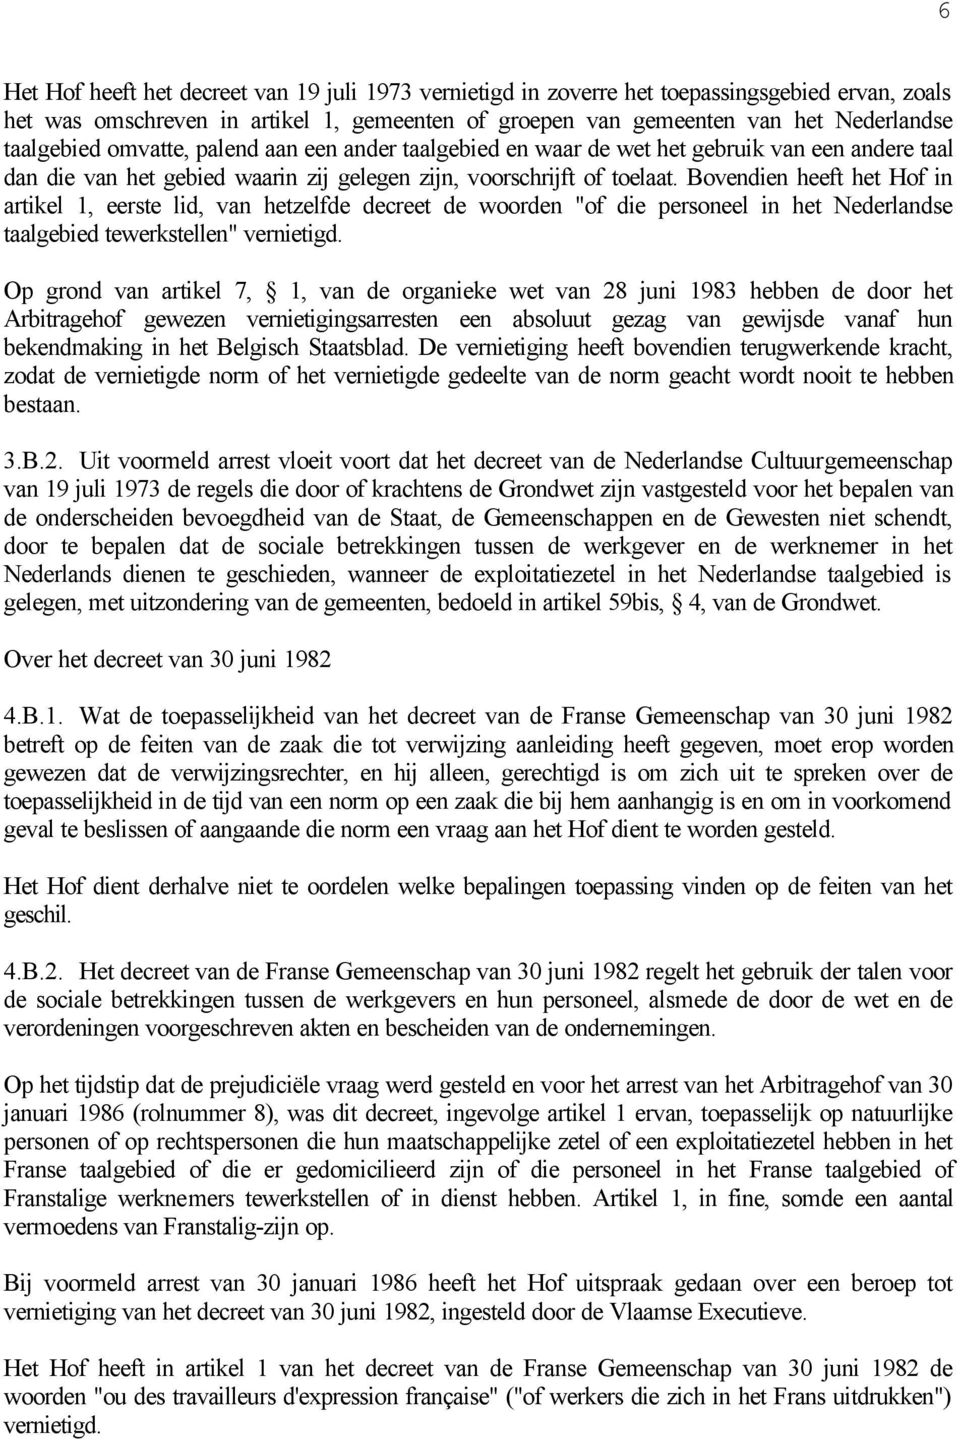 Bovendien heeft het Hof in artikel 1, eerste lid, van hetzelfde decreet de woorden "of die personeel in het Nederlandse taalgebied tewerkstellen" vernietigd.